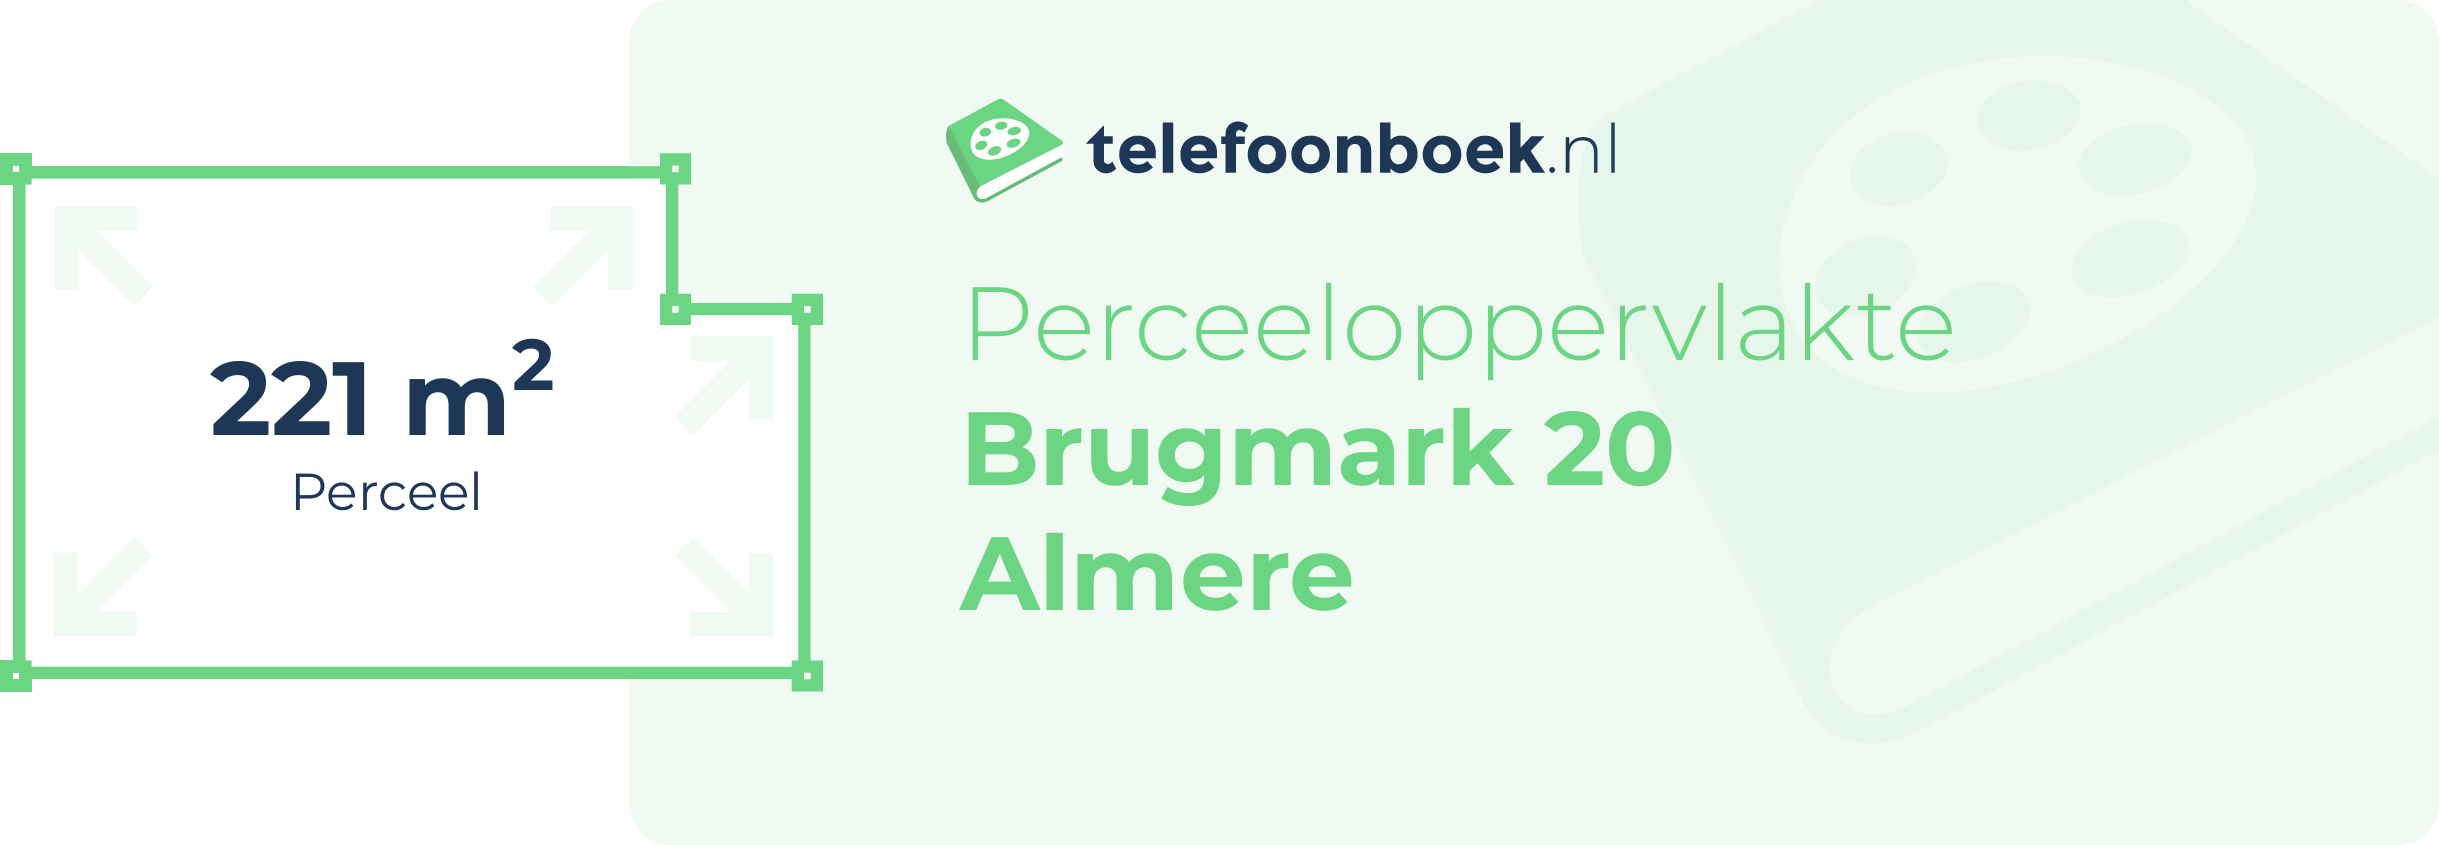 Perceeloppervlakte Brugmark 20 Almere